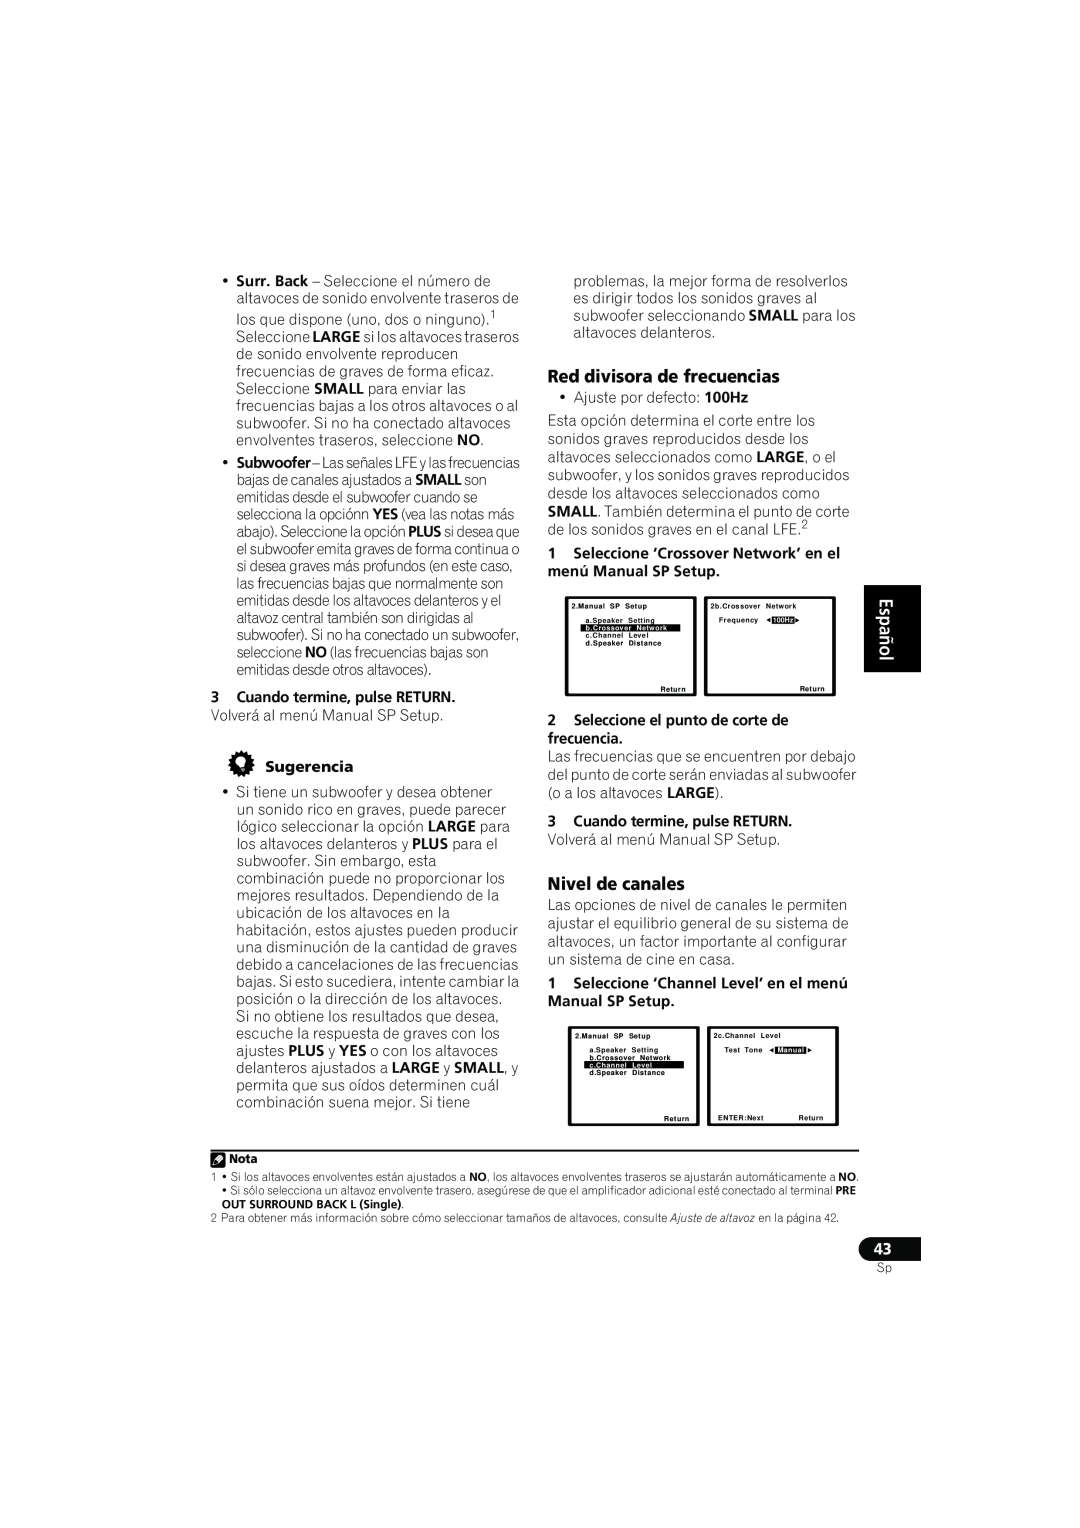 Pioneer VSX-819H-S manual Red divisora de frecuencias, Nivel de canales, English Español, Sugerencia 